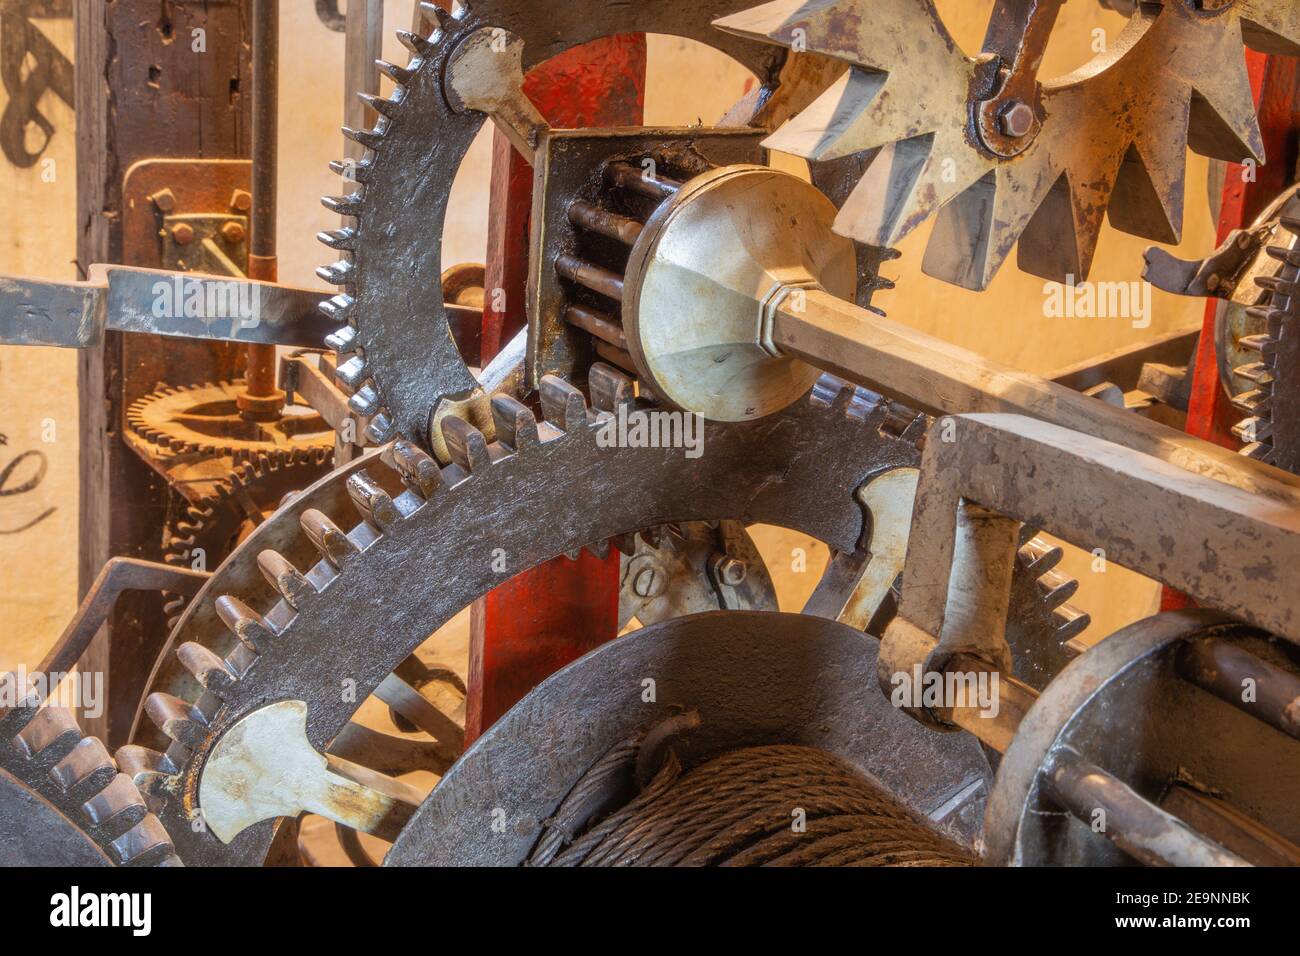 Le toothwheel - détail de clockwork Banque D'Images